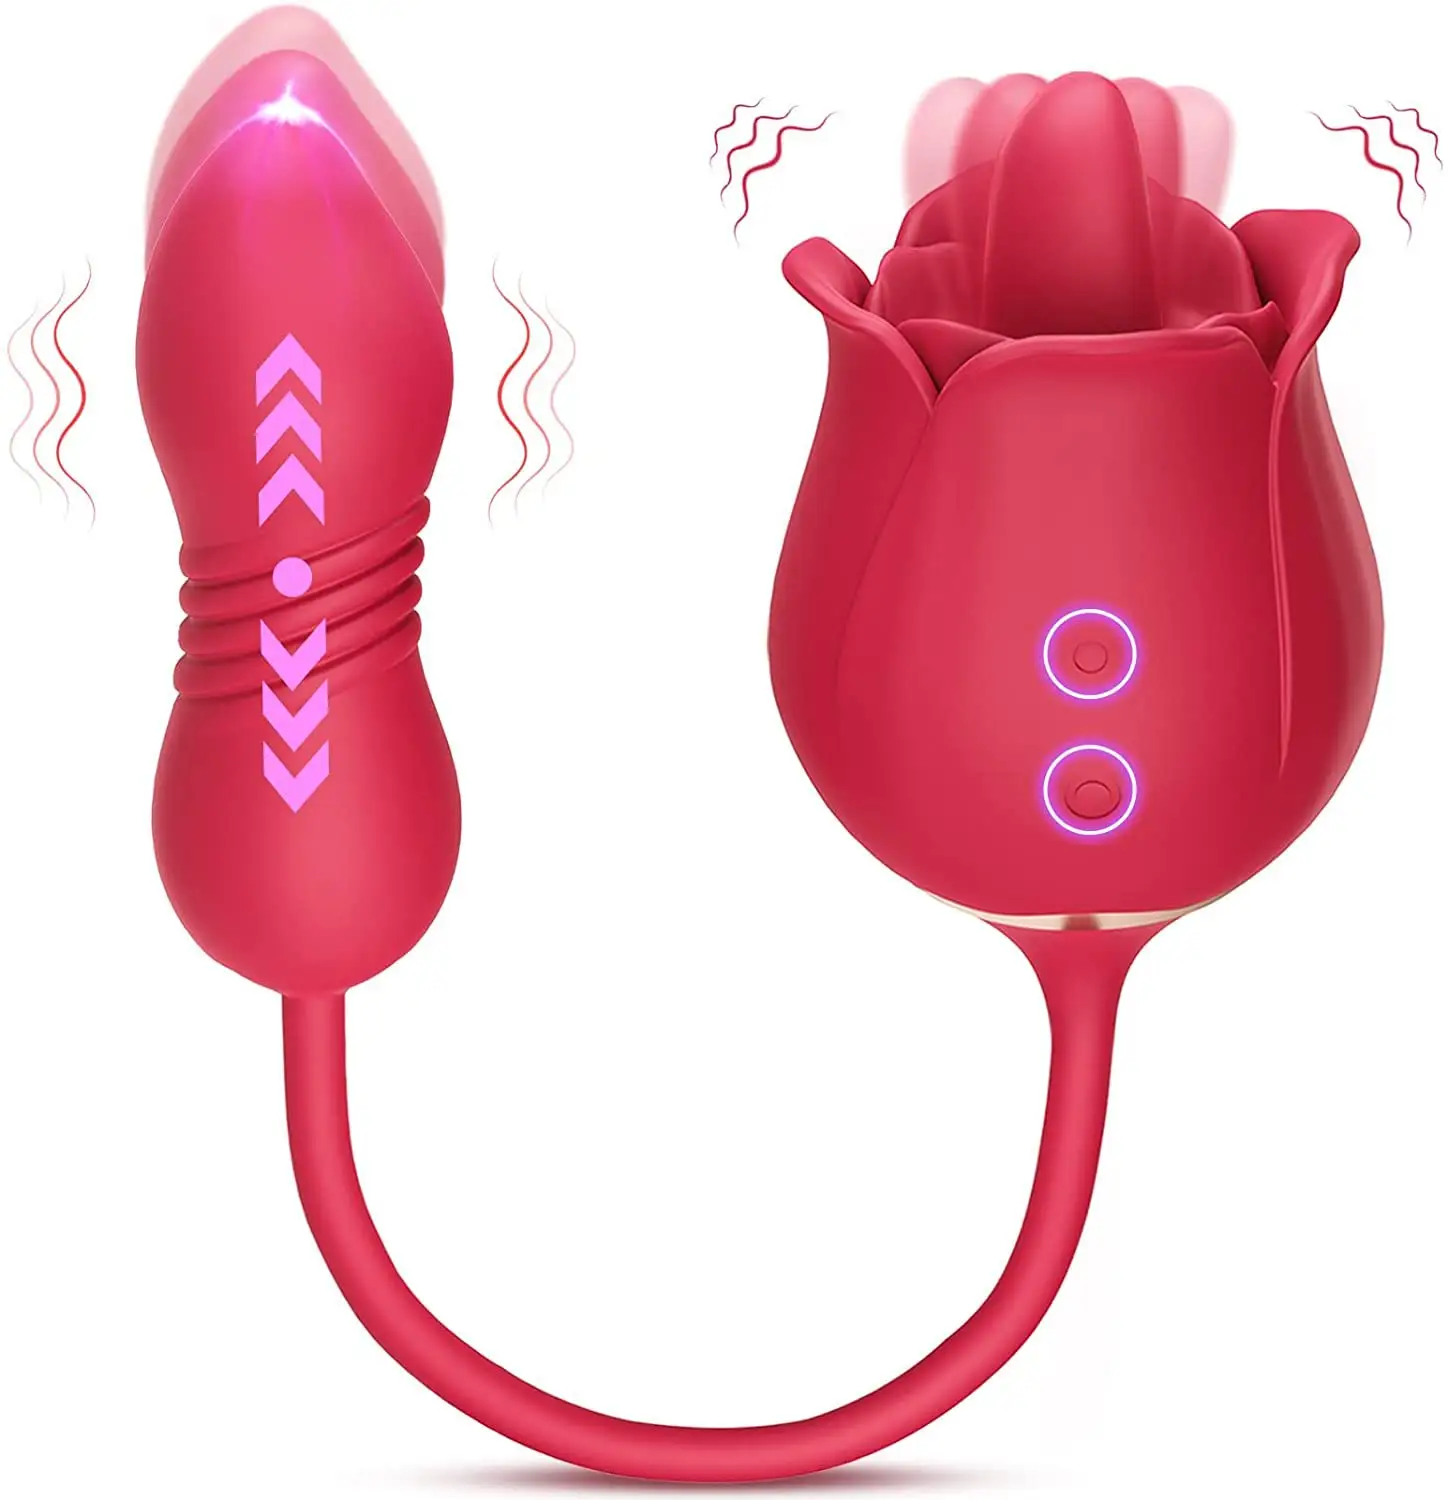 Neuer S-Hand weiblicher Mastur bator Rosen förmiger Zungen vibrator mit Preis ist vernünftig